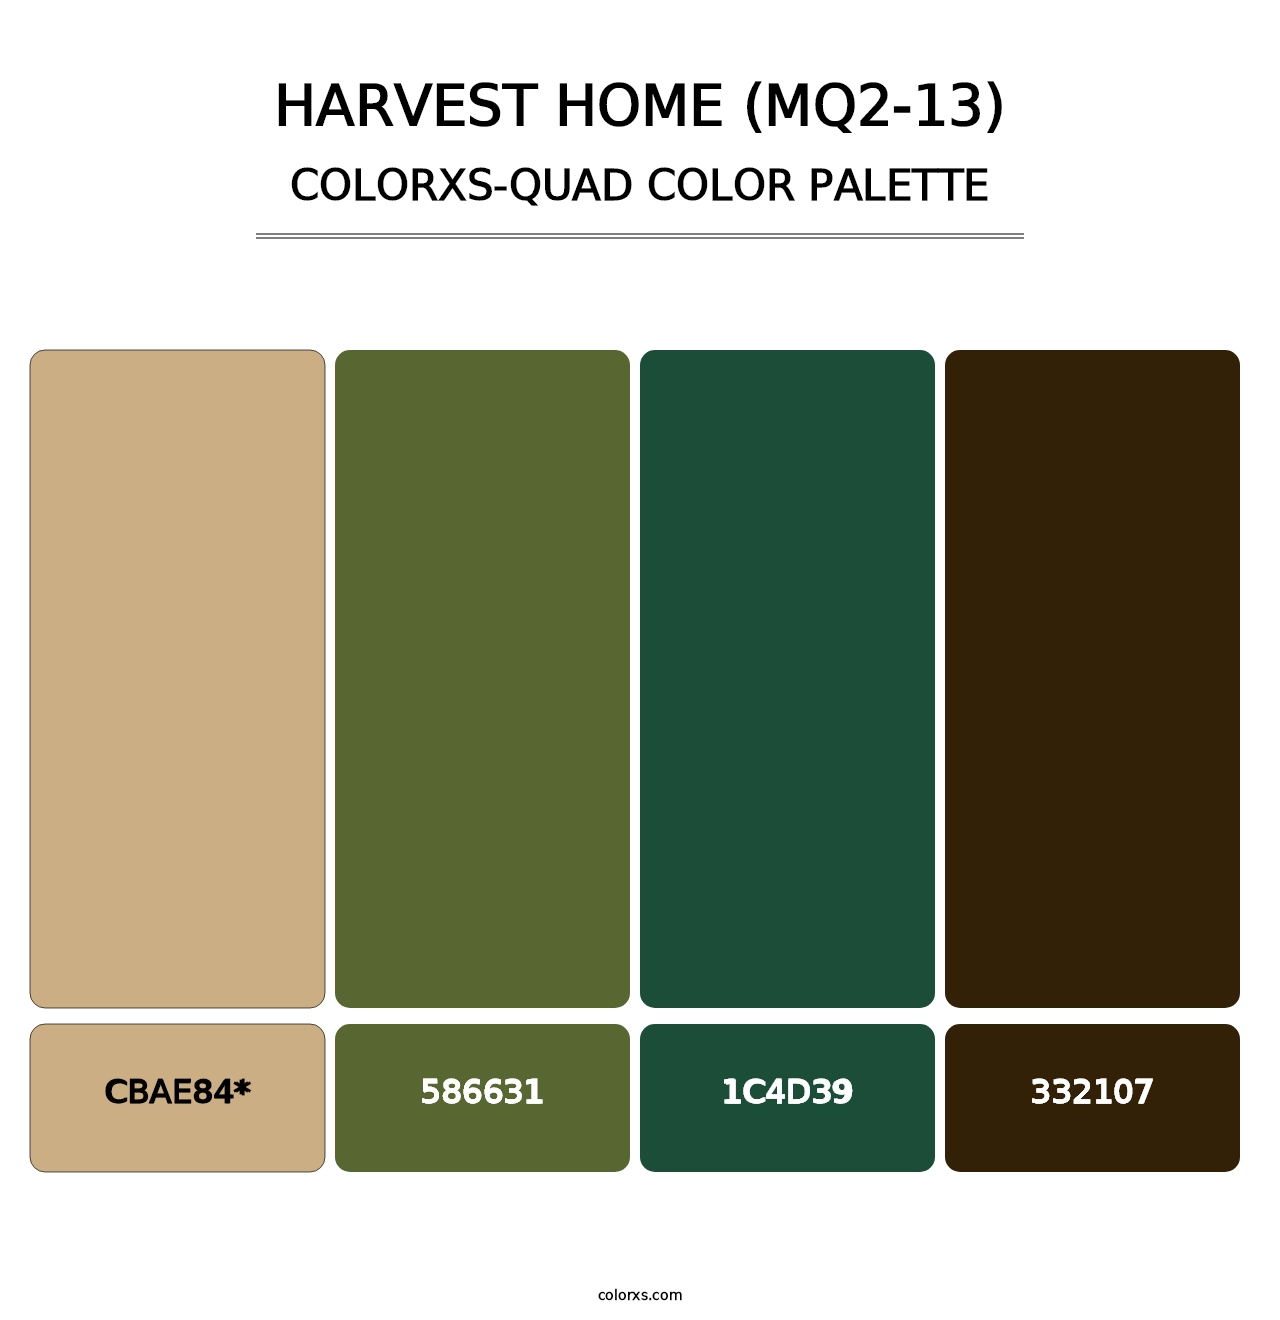 Harvest Home (MQ2-13) - Colorxs Quad Palette